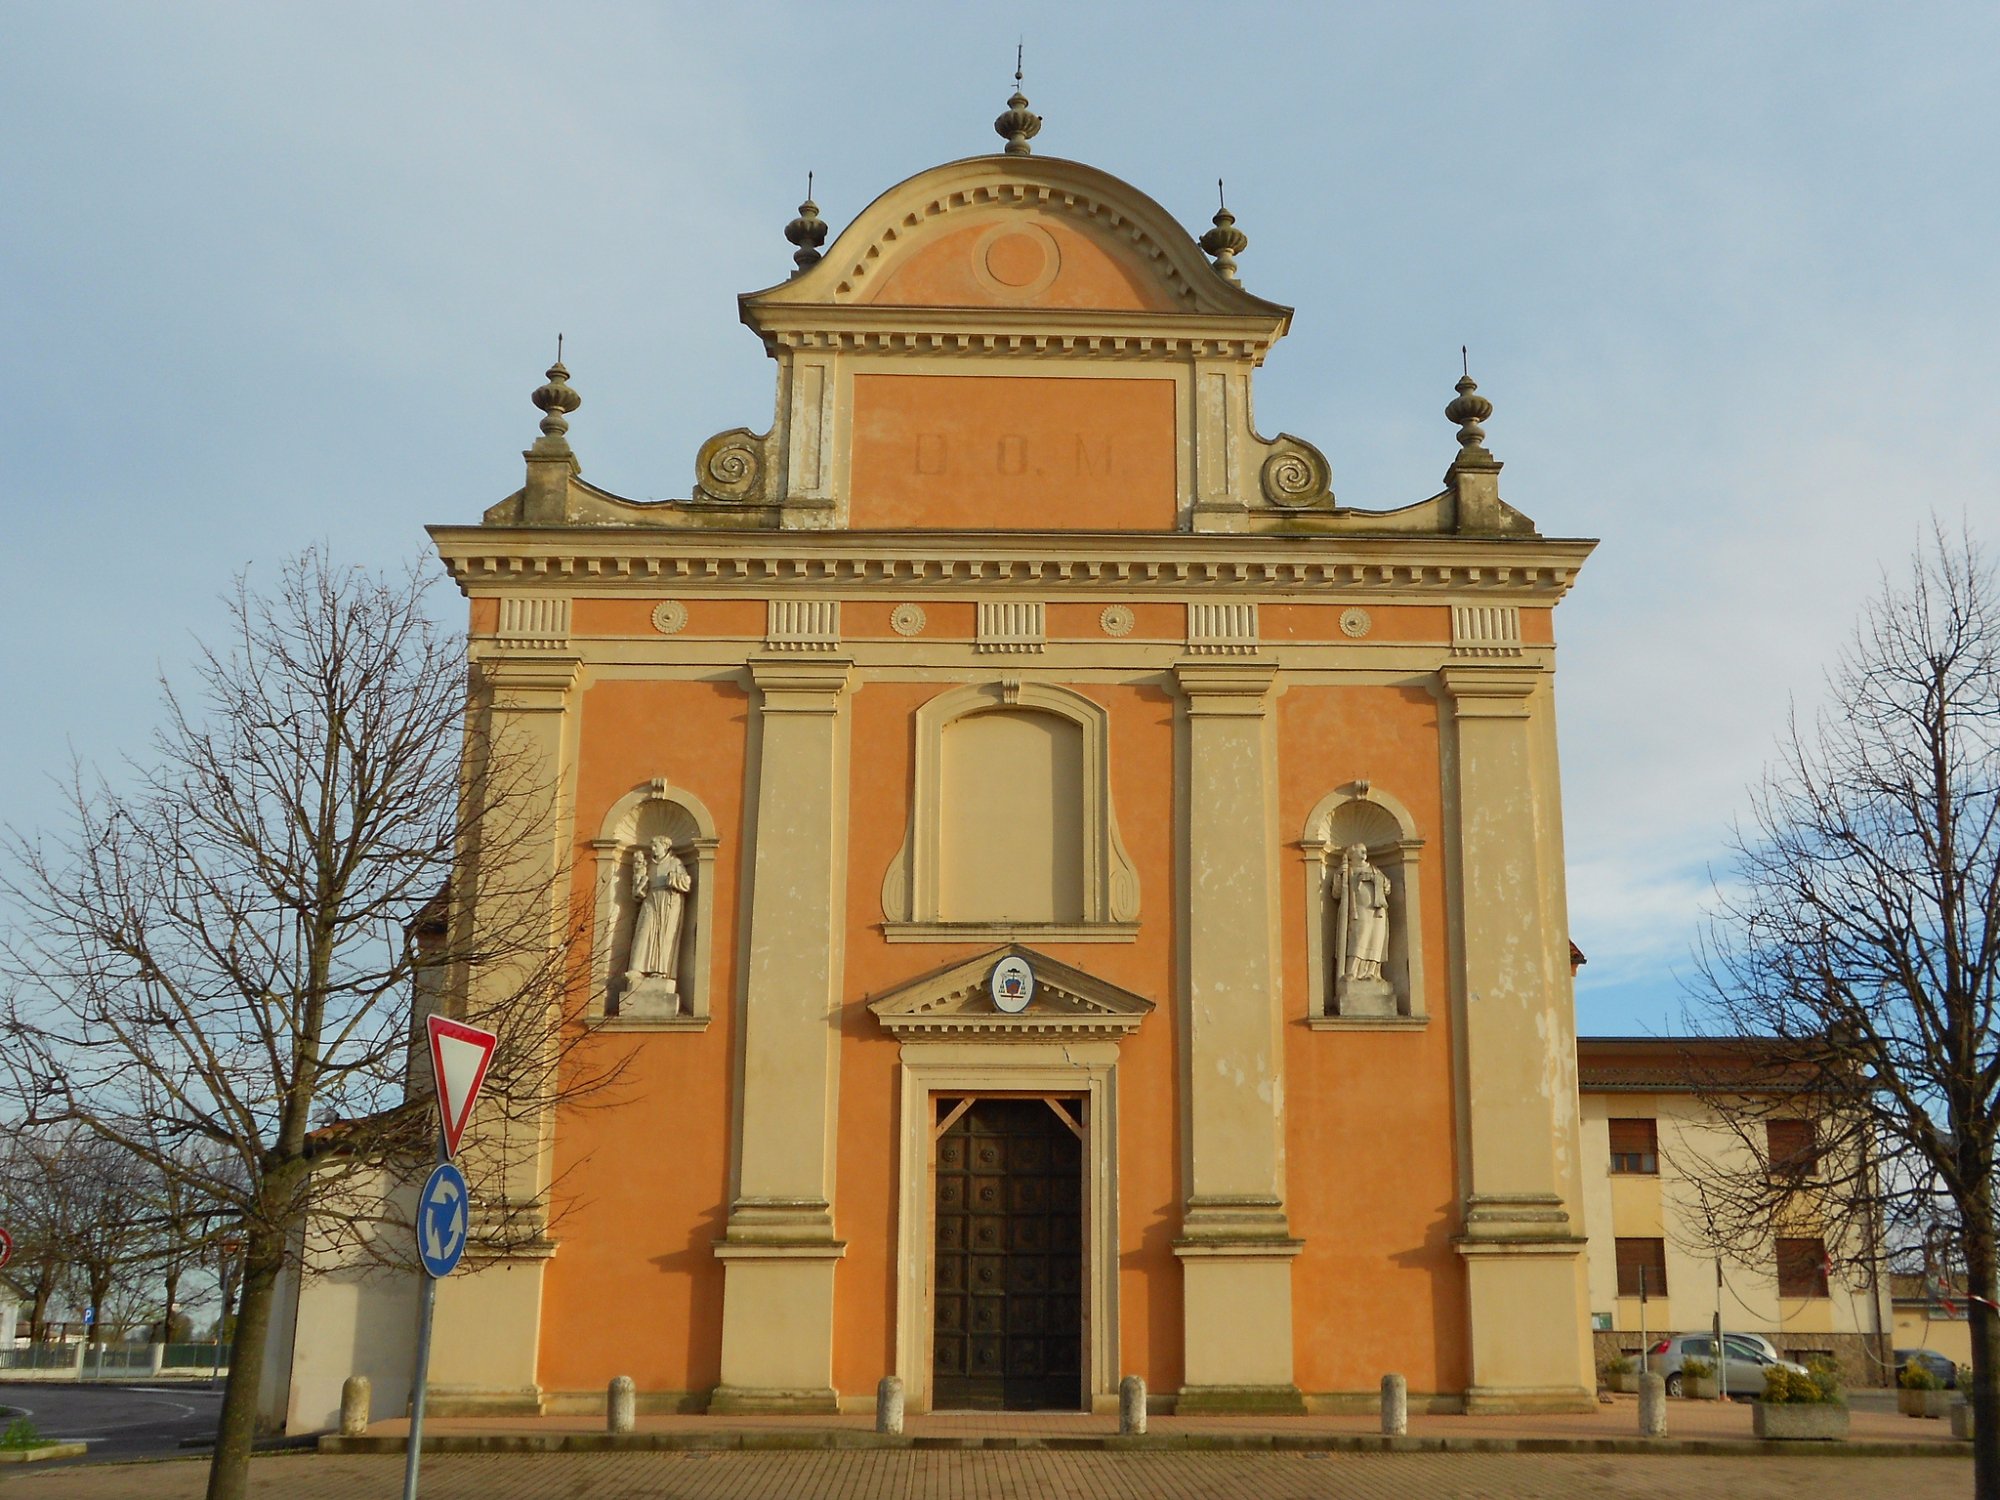 Chiesa di Santa Sofia